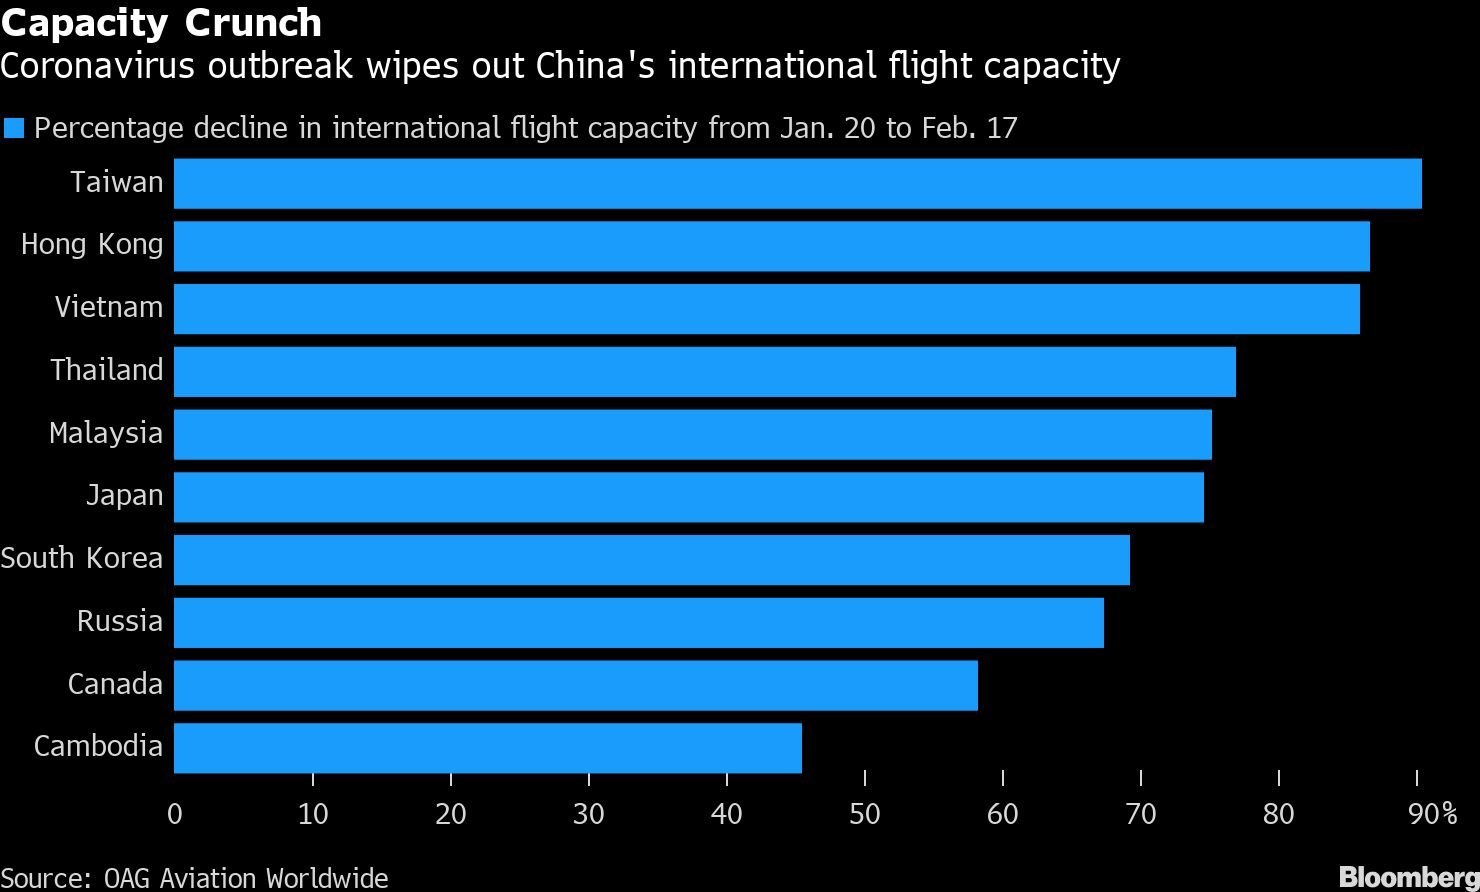 crise de capacidade: surto de coronavírus afeta capacidade de vôo internacional da China